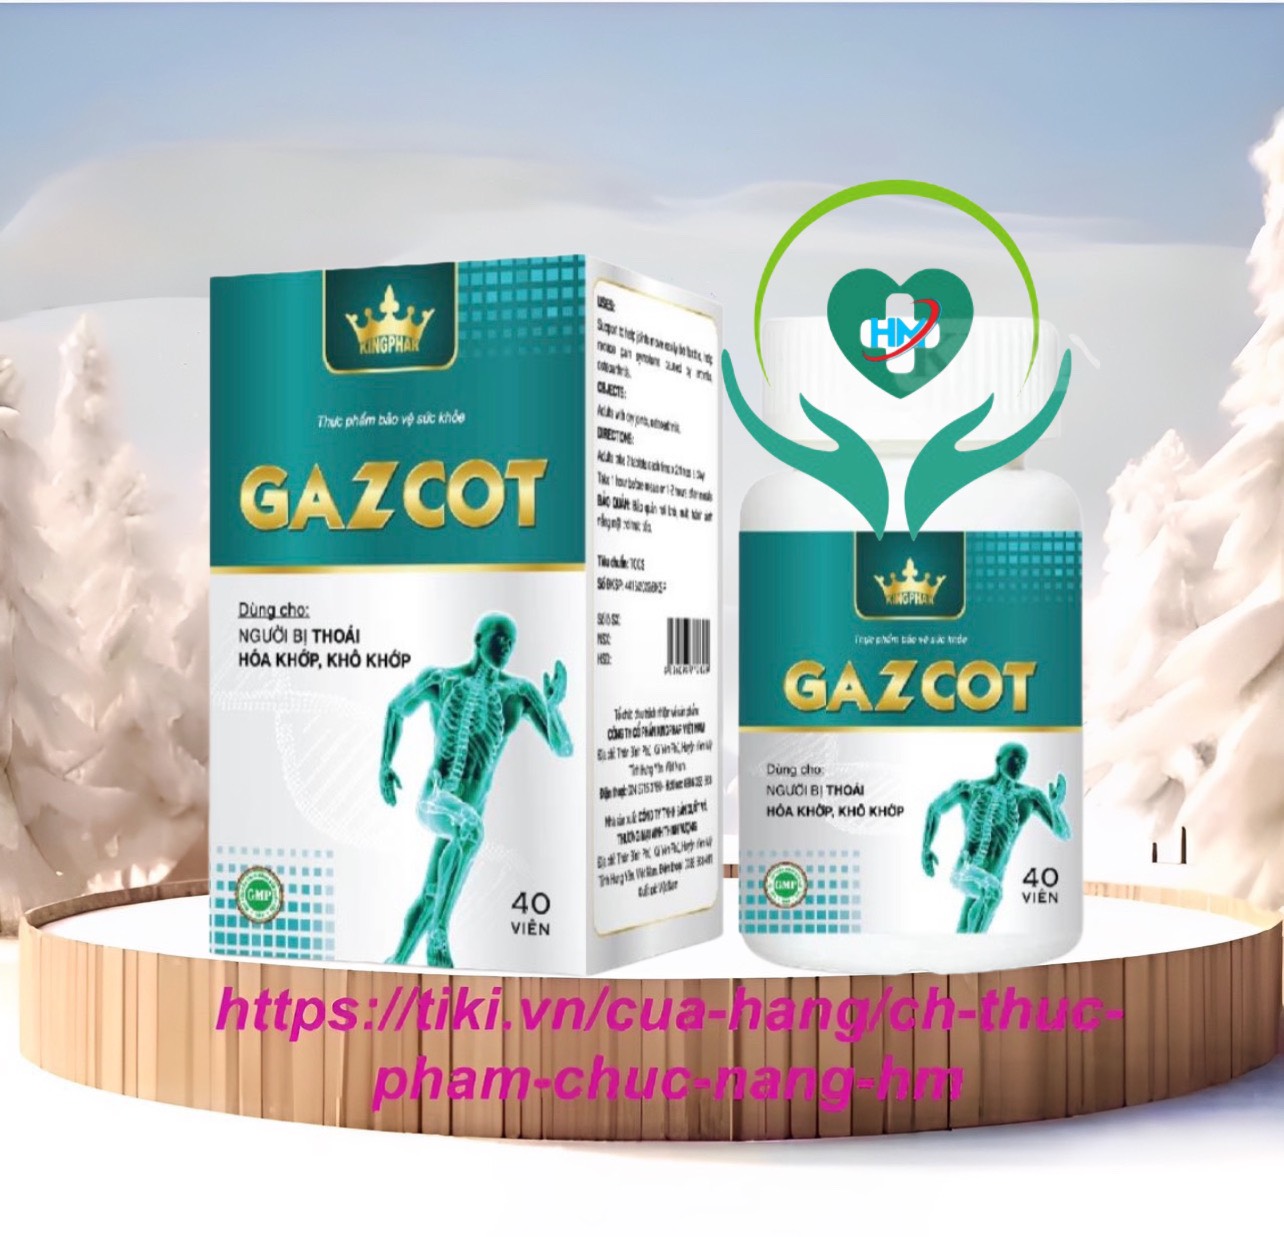 Viên uống Gazcot hỗ trợ giúp khớp vận động dễ dàng, linh hoạt hộp 40 viên